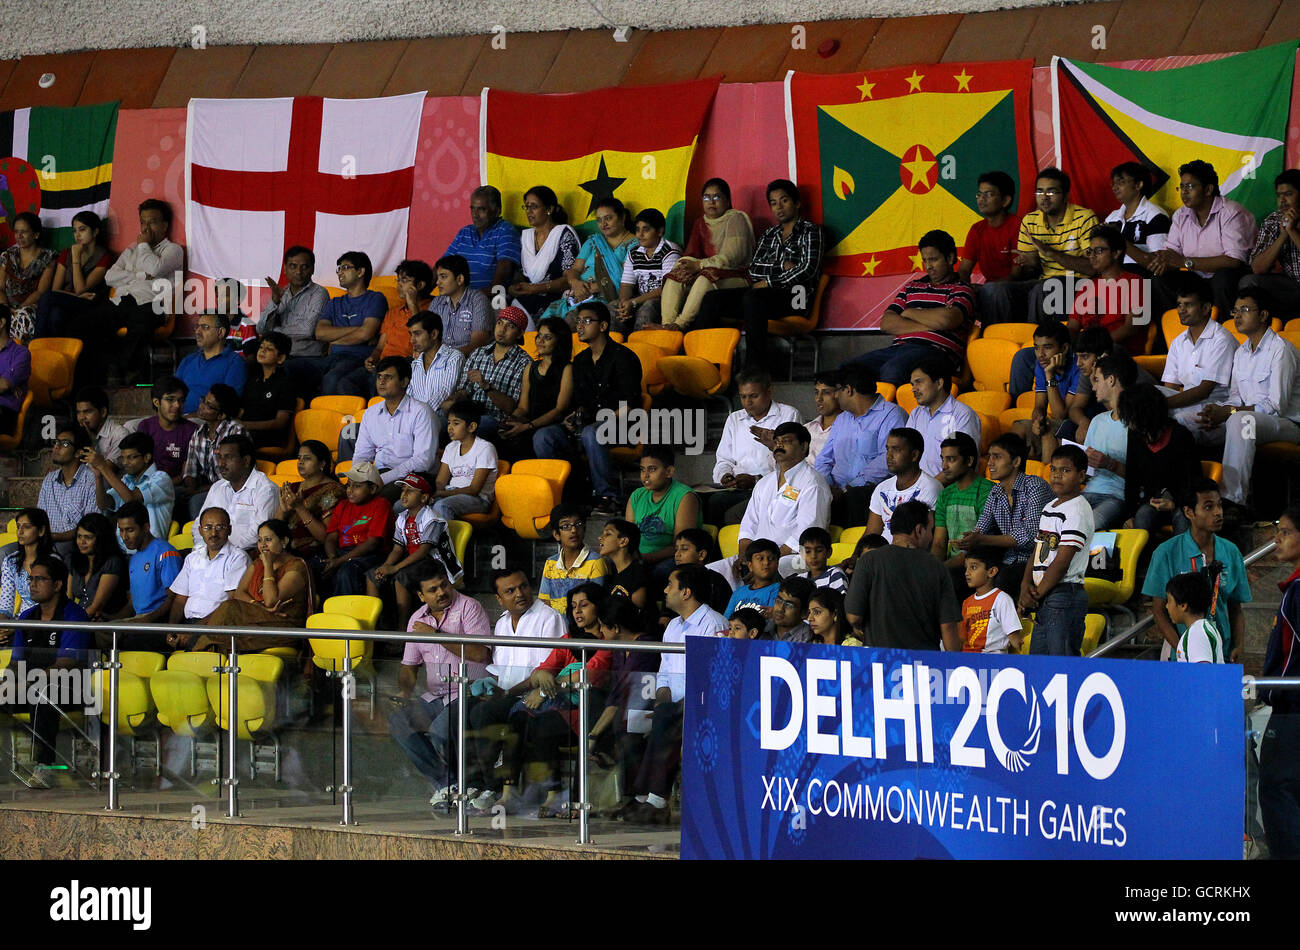 Les foules s'assoient pour observer l'action en cours pendant la séance de la soirée à la compétition de boxe le quatrième jour des Jeux du Commonwealth de 2010 au stade Talkatora de Delhi, en Inde Banque D'Images